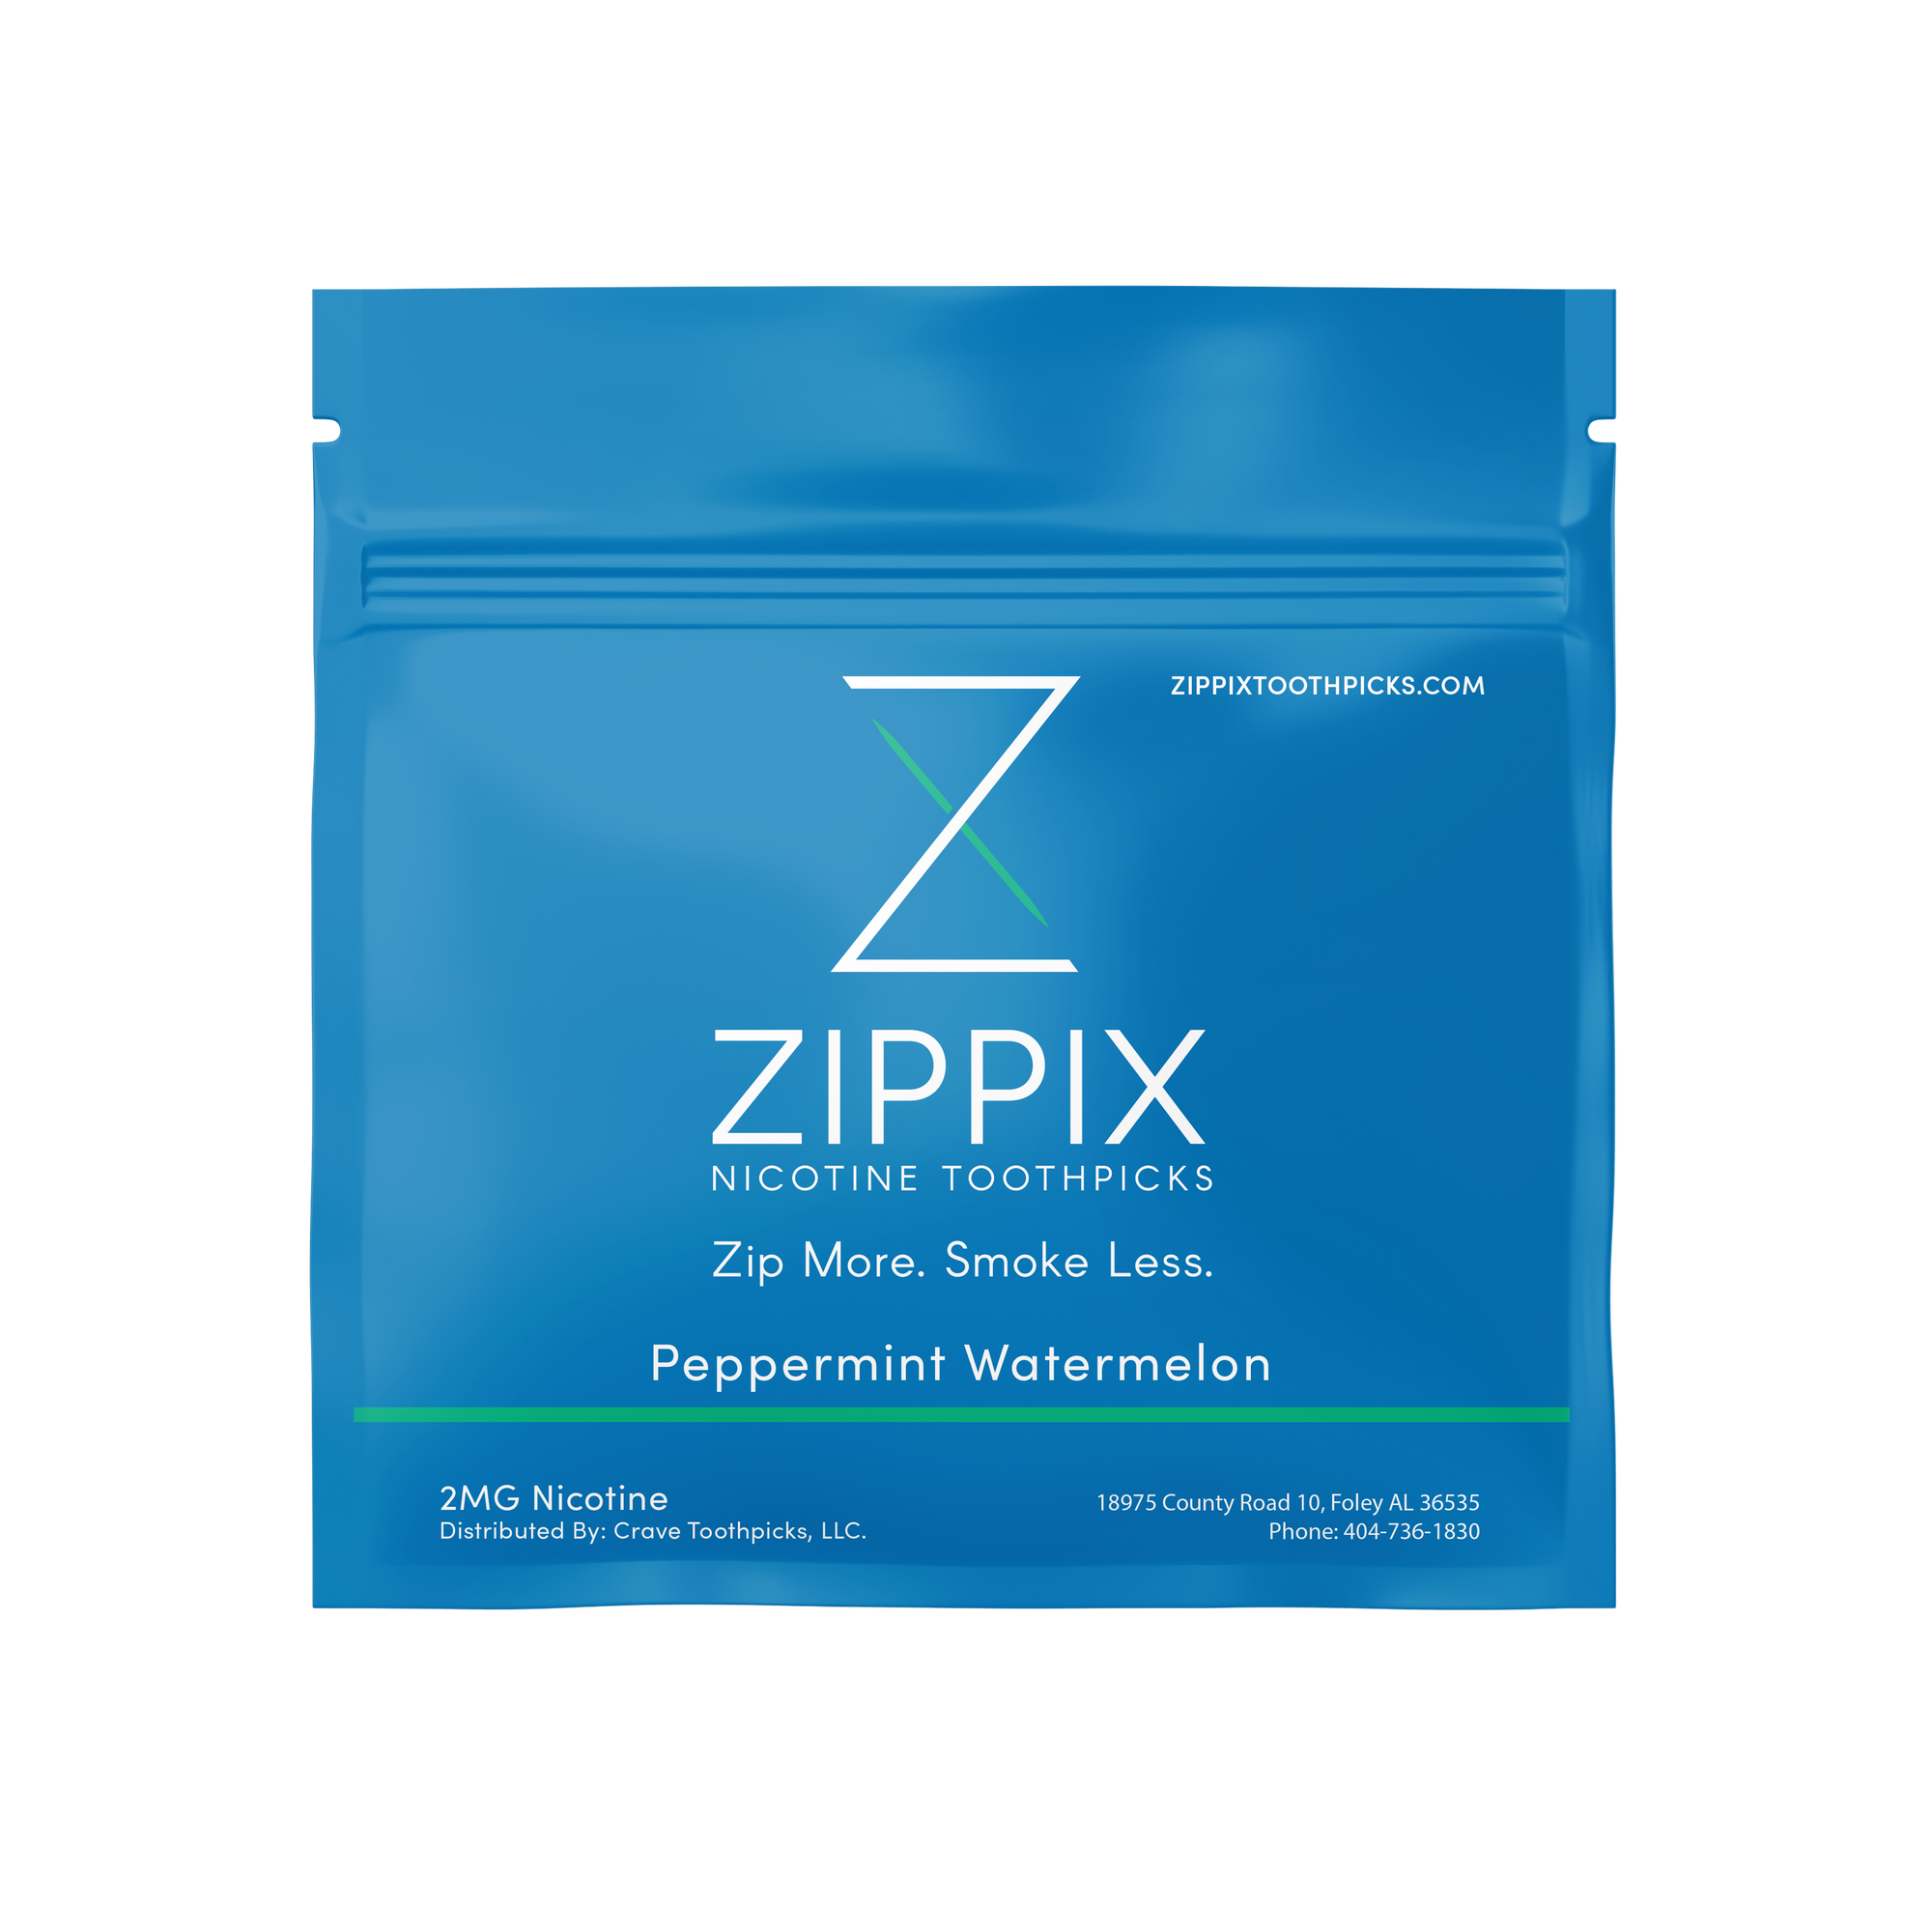 Zippix 20 Count Packs